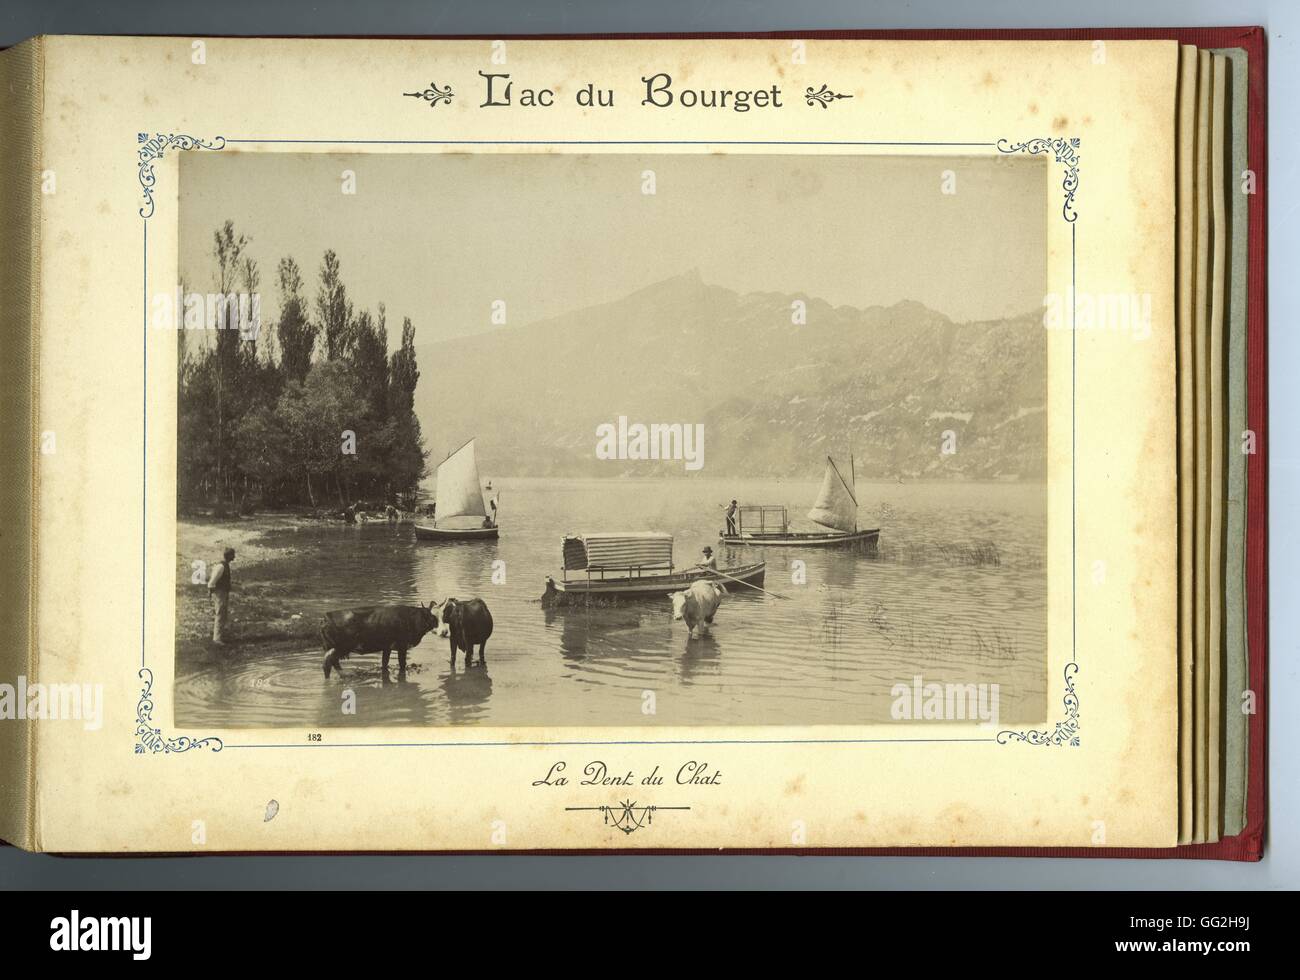 Environs de la ville de Aix-les-Bains : vue sur la Dent du Chat du Lac du Bourget Album avec 12 photographies de Aix-les-Bains fin du xixe siècle, la moitié de l'album Octavo galuchat rouge Banque D'Images